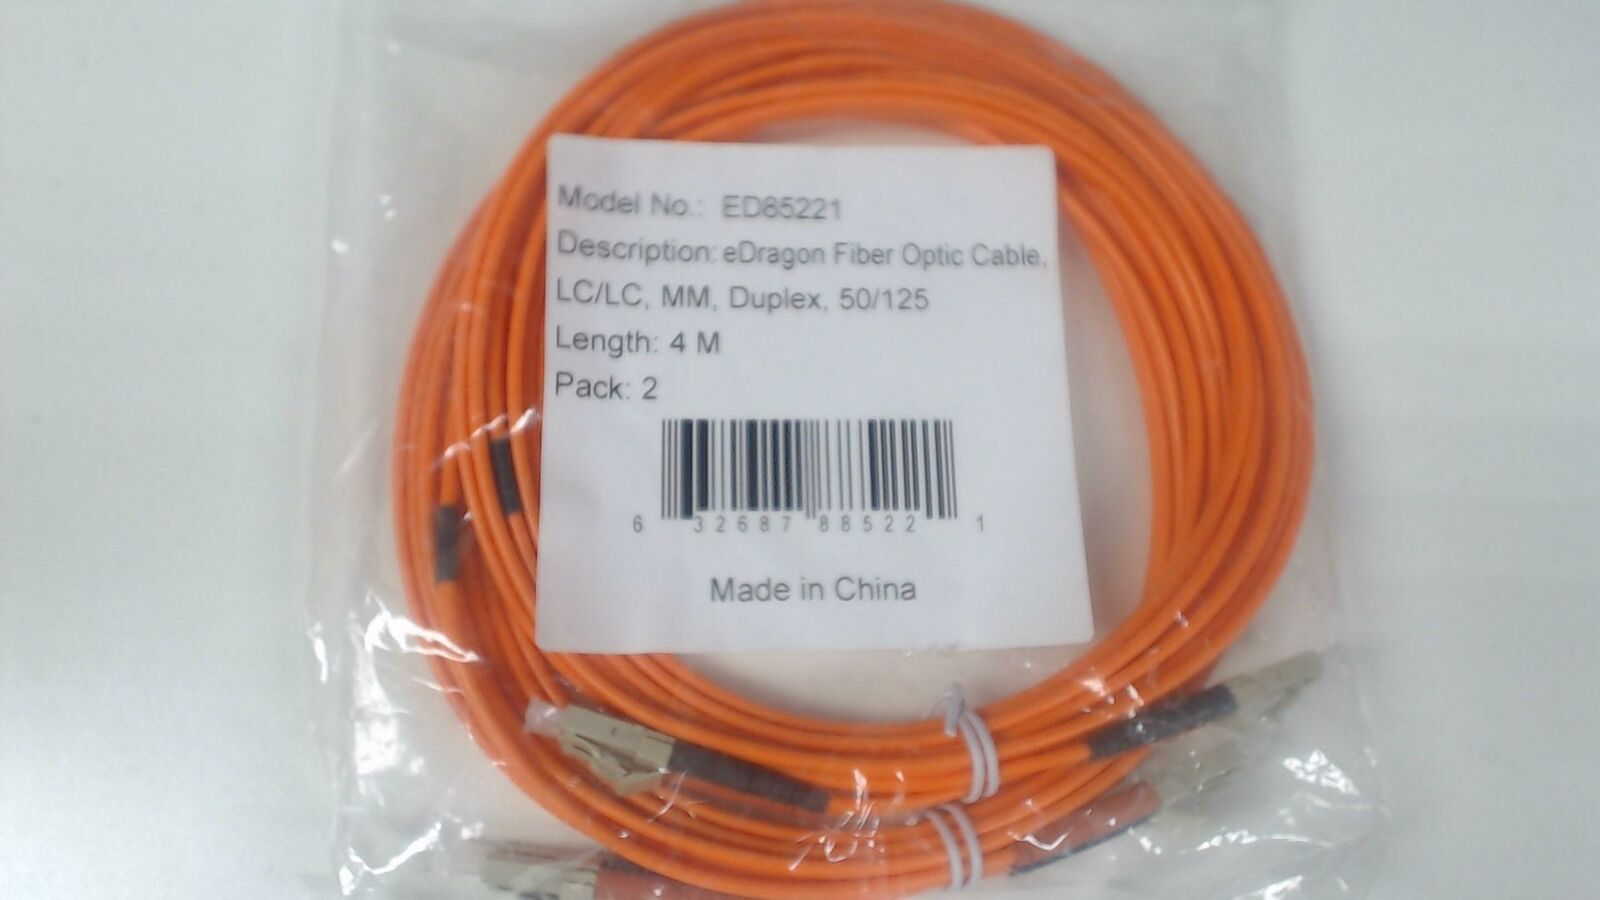 Pack of 2: 4m - LC / LC Muiltimode Duplex 50/125 - Orange Fiber Cable